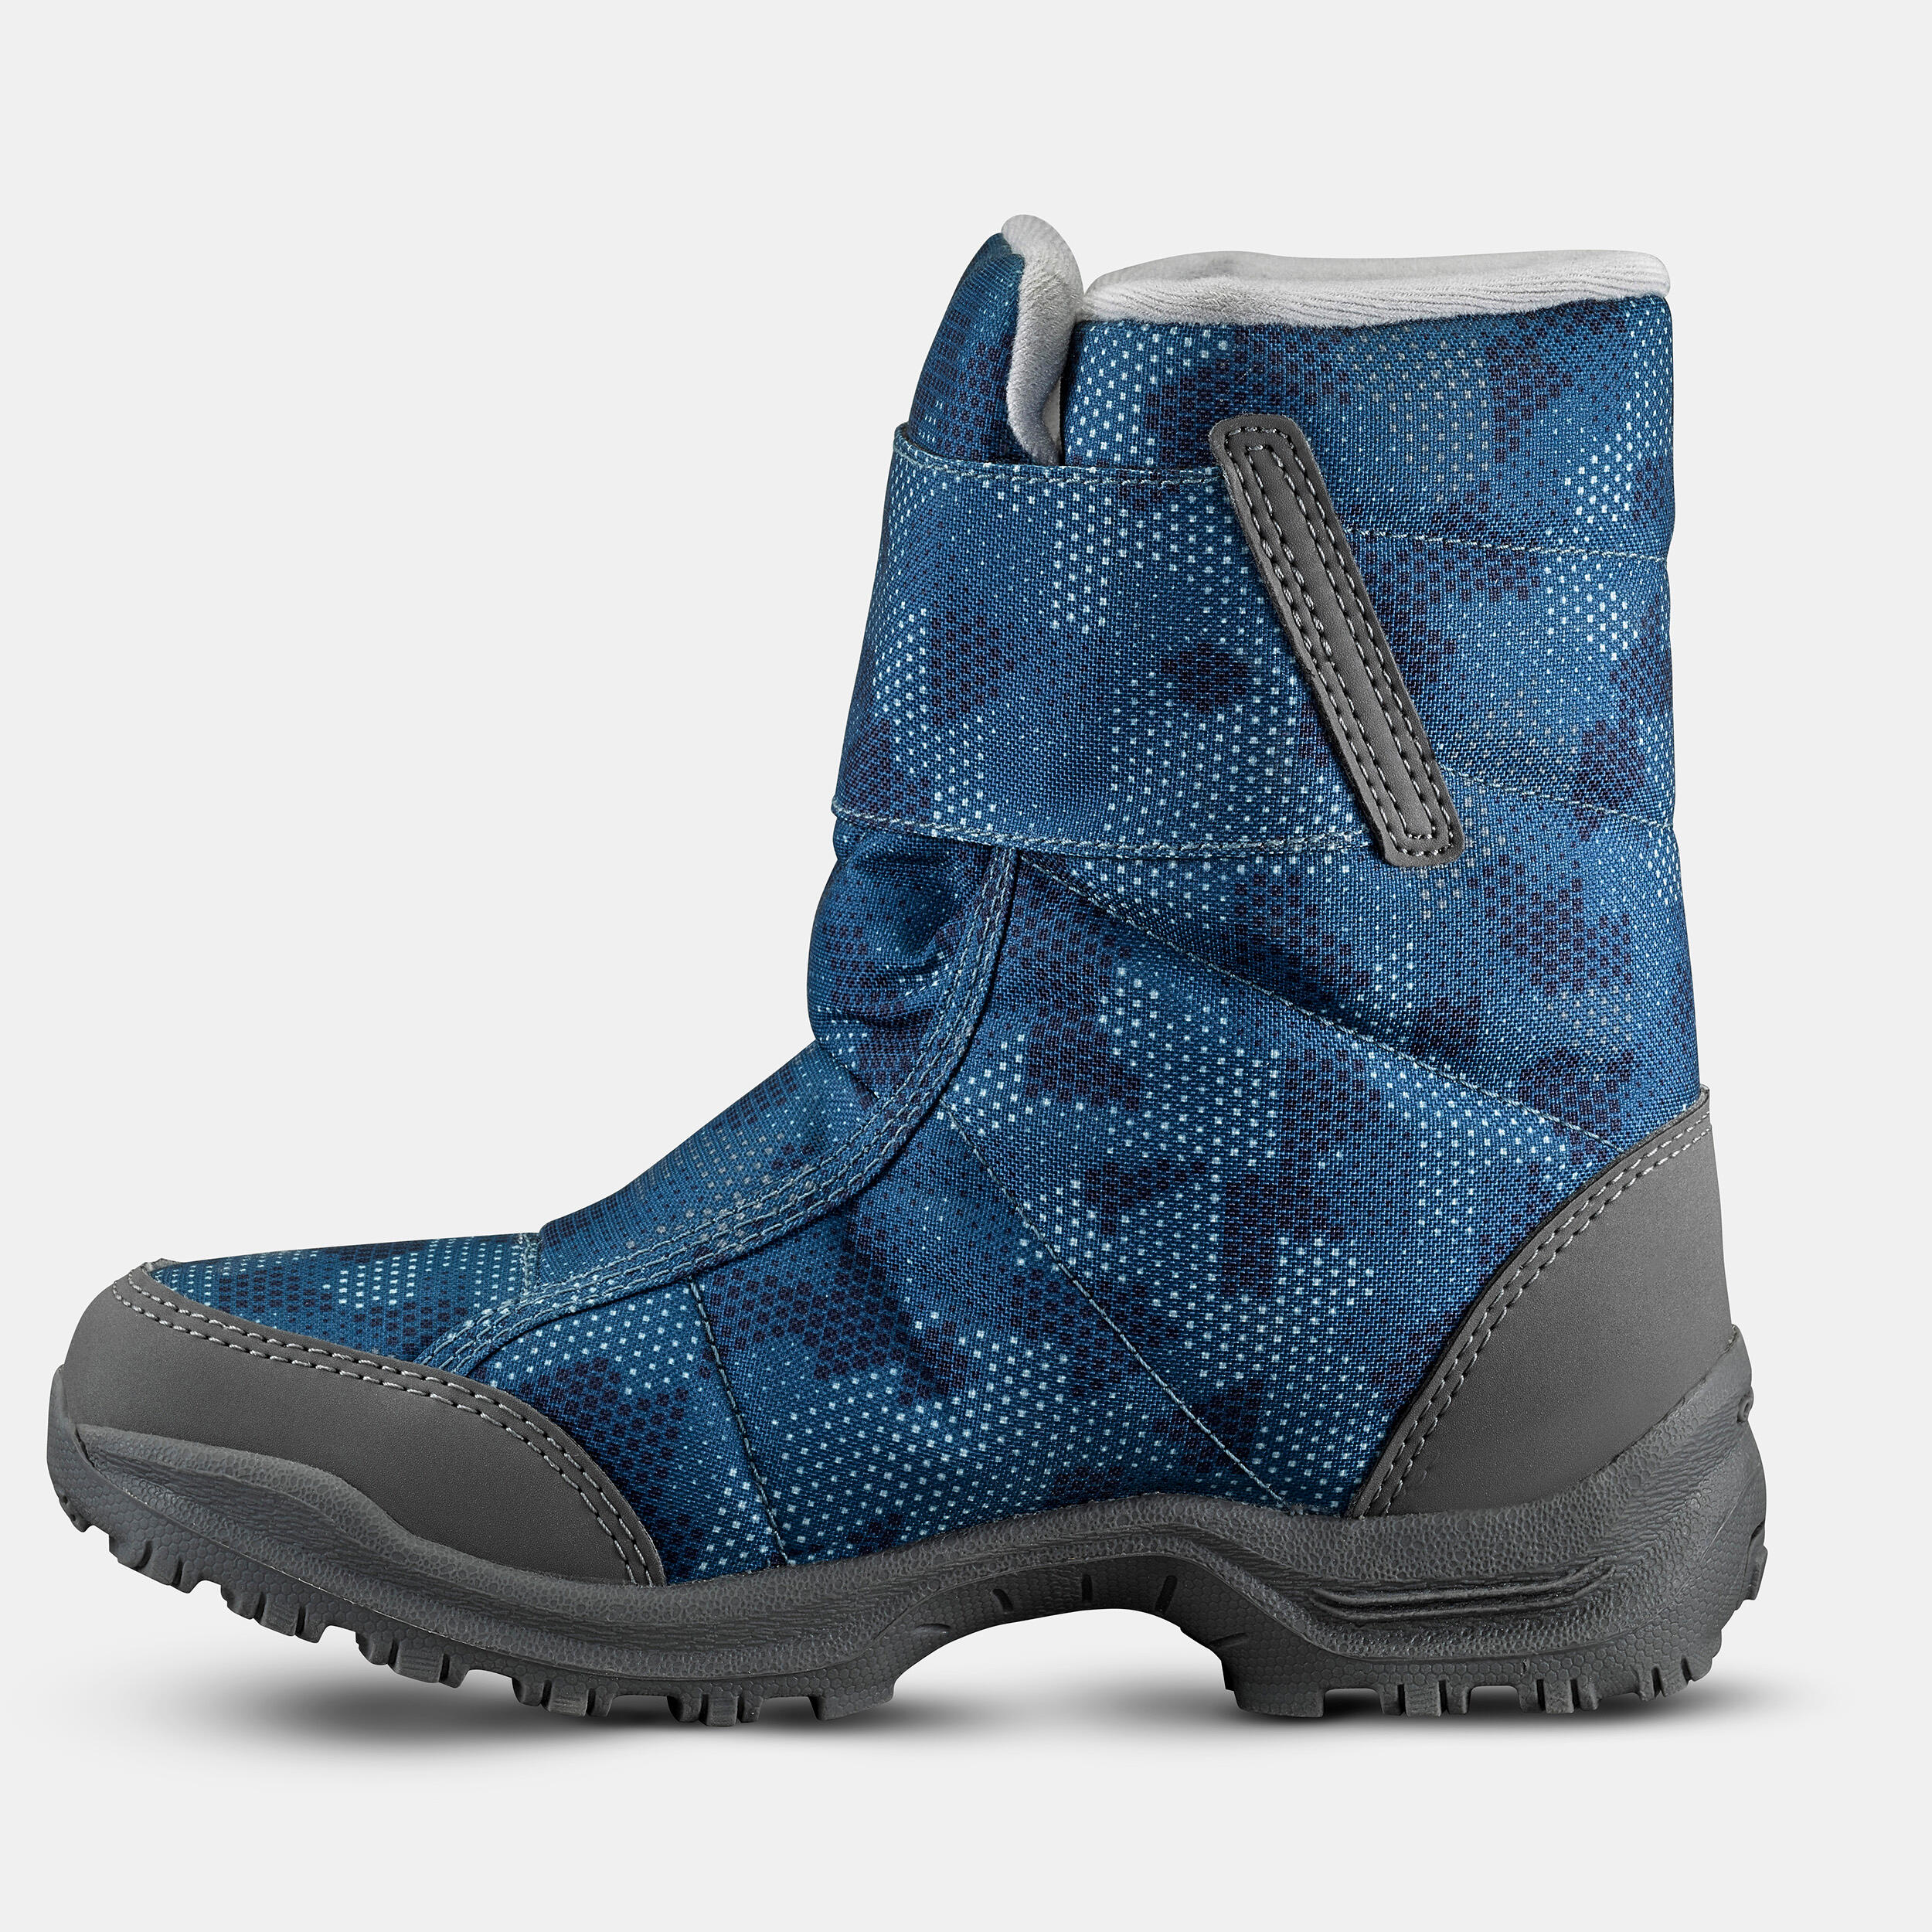 Kids’ Warm Waterproof Snow Hiking Boots SH100 X-Warm Size 7 - 5.5 4/7